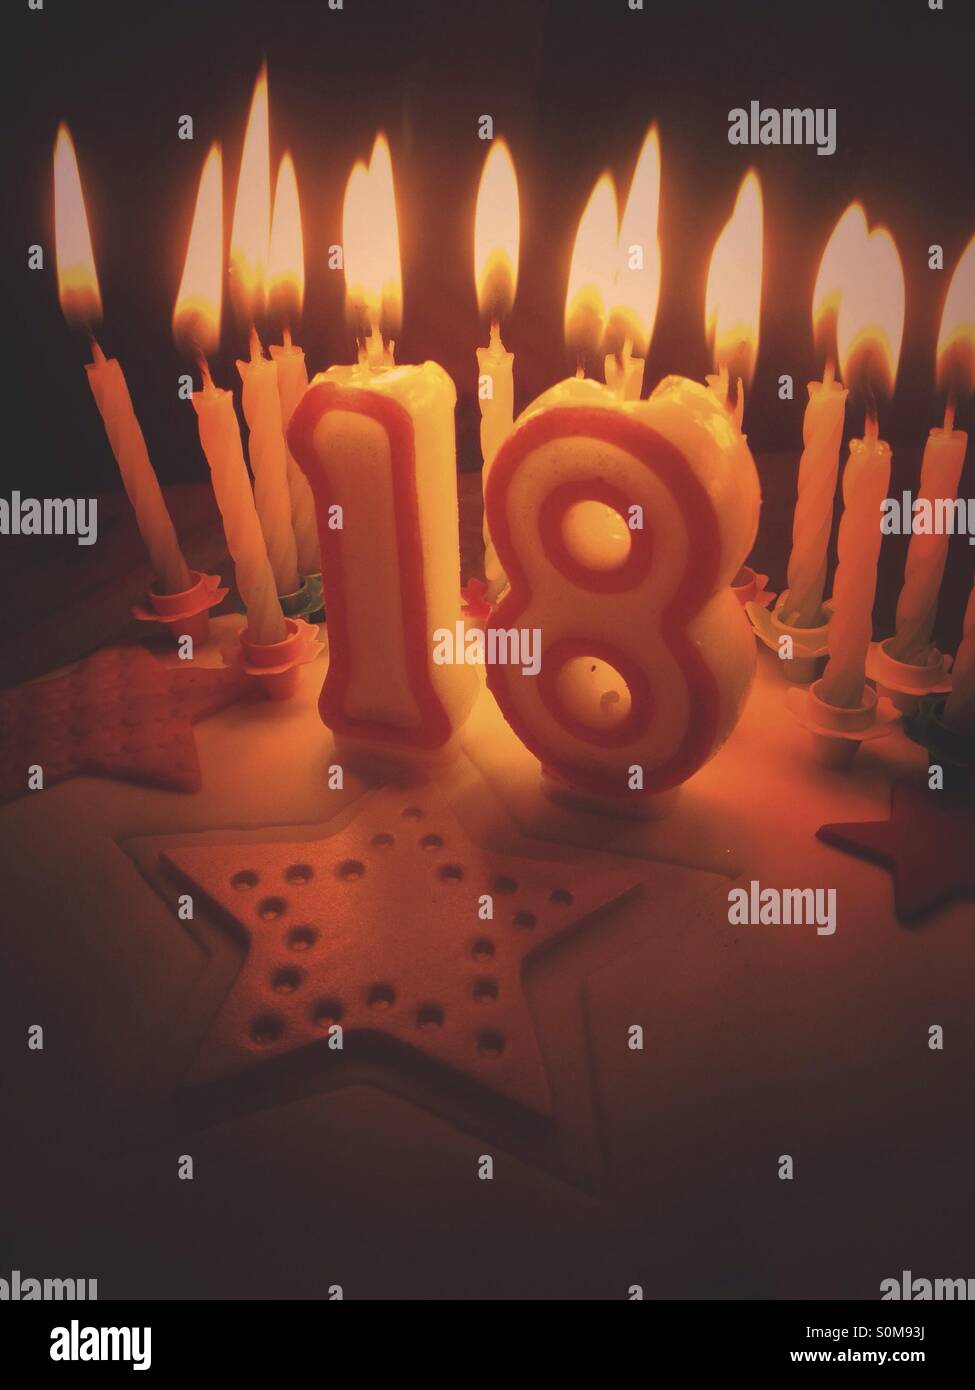 Feliz 18 cumpleaños fotografías e imágenes de alta resolución - Alamy